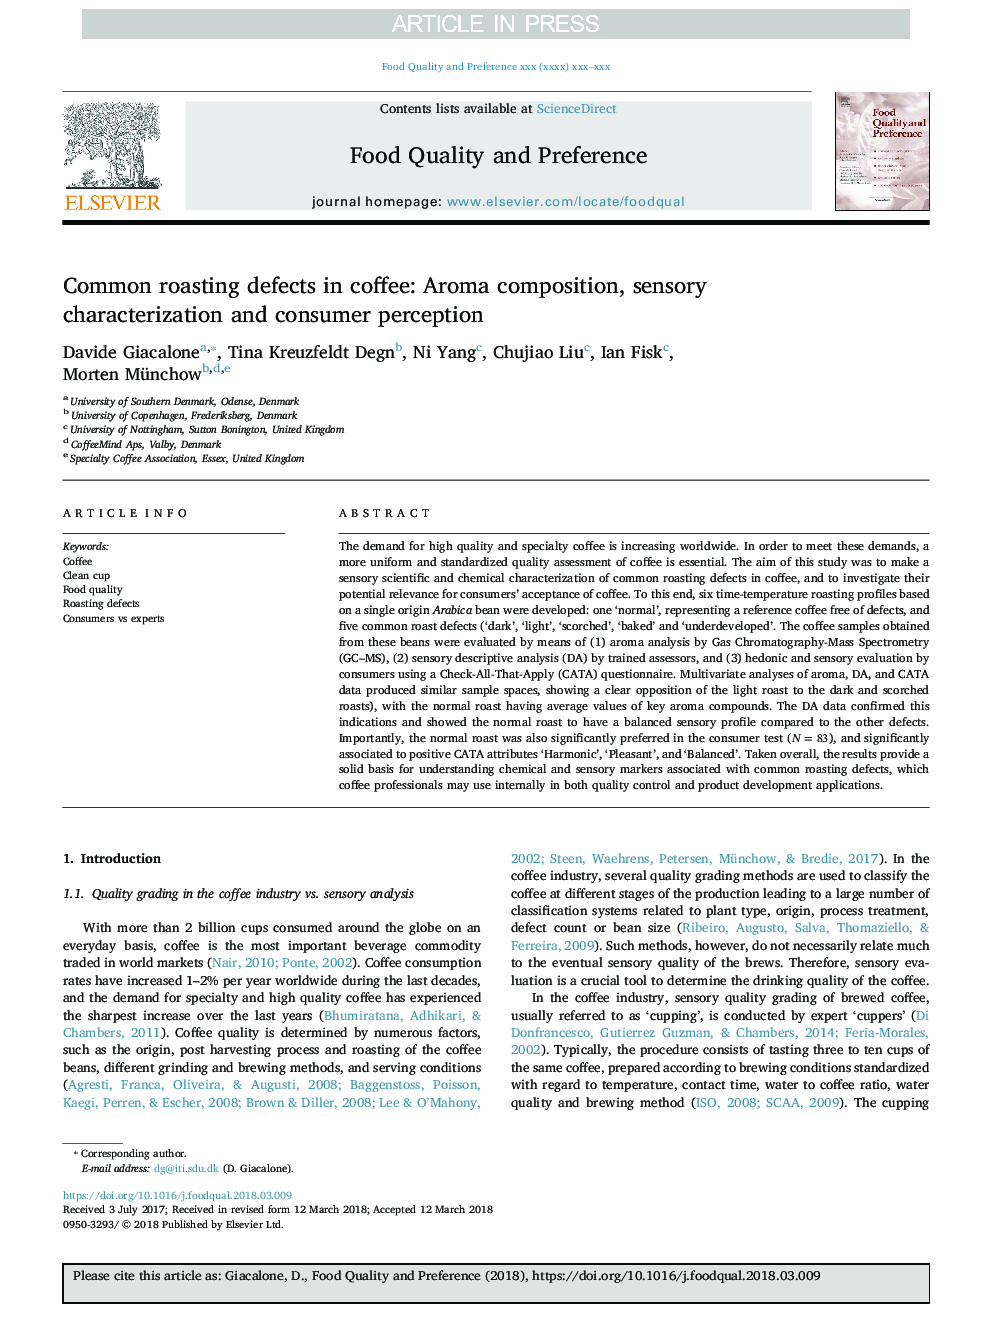 نقص های شستشوی معمول در قهوه: ترکیب عطر، ویژگی حساسیتی و ادراک مصرف کننده